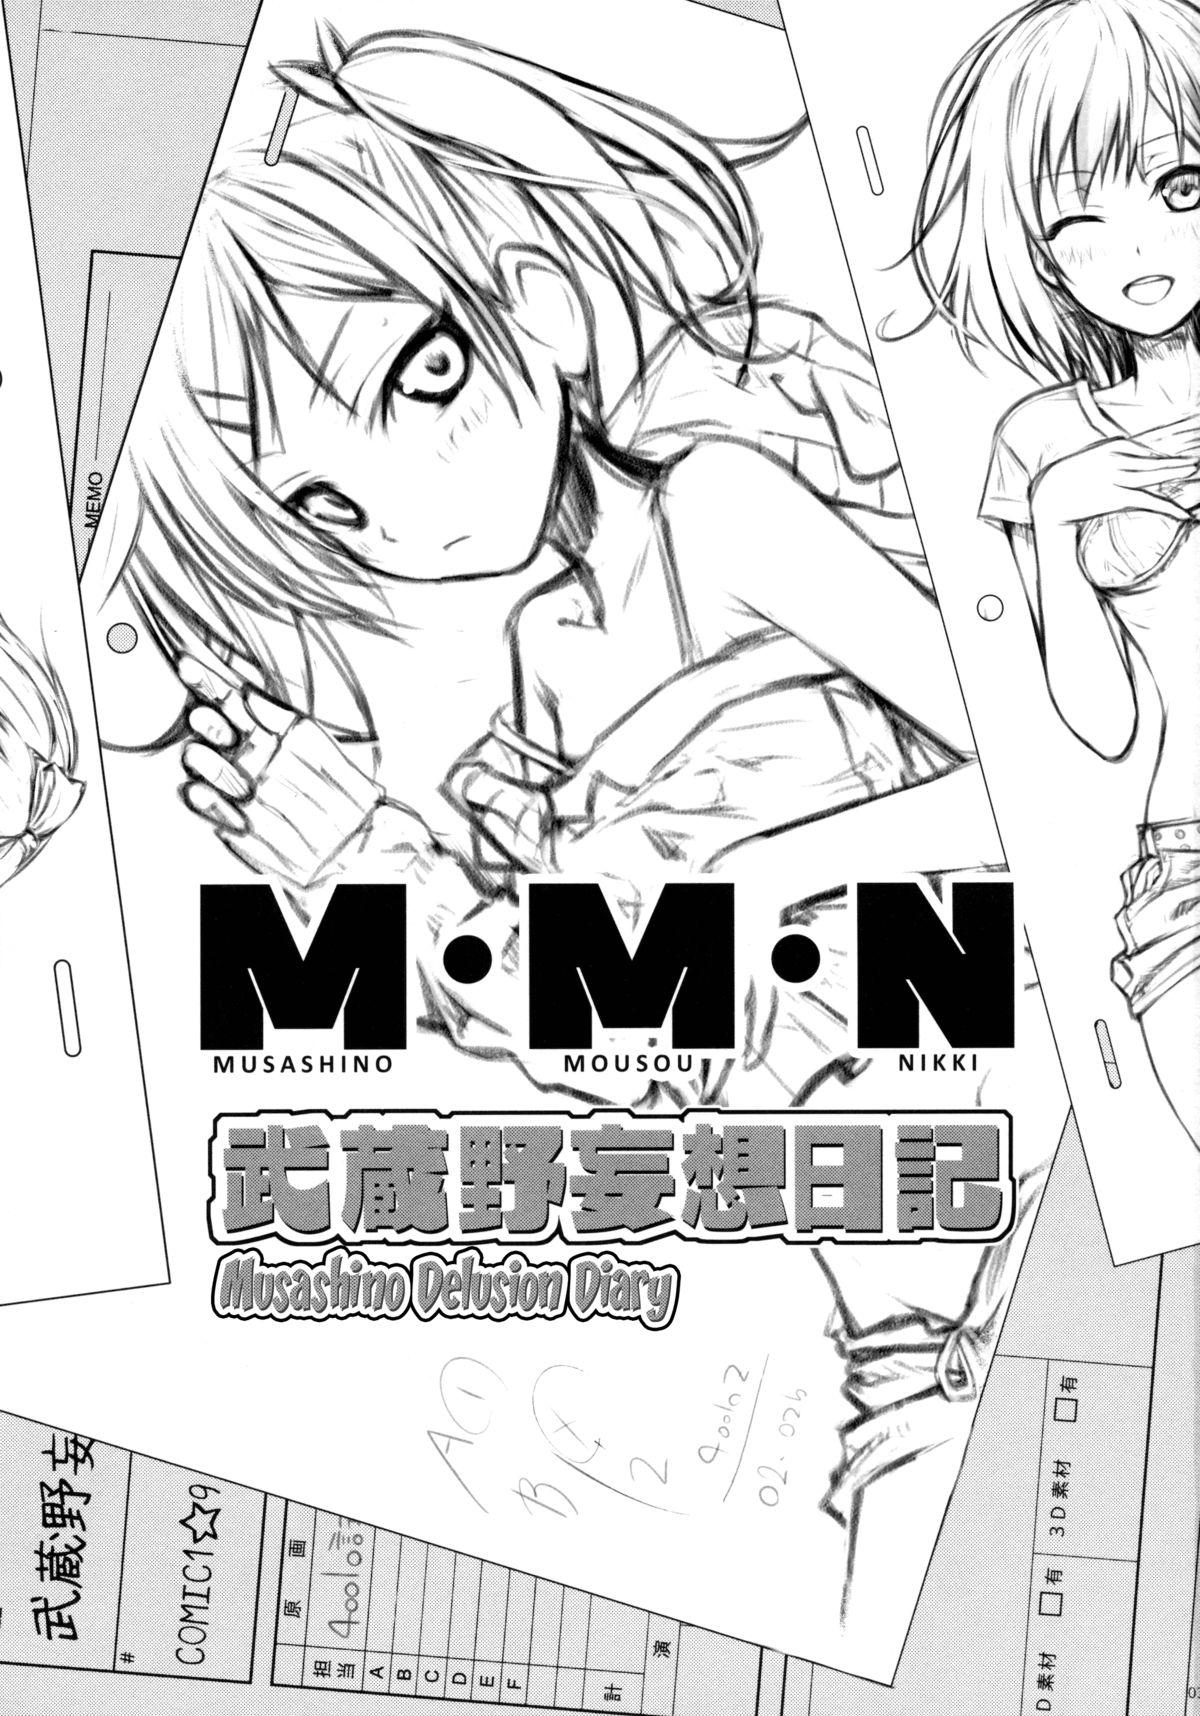 Musashino Mousou Nikki | Musashino Delusion Diary 2